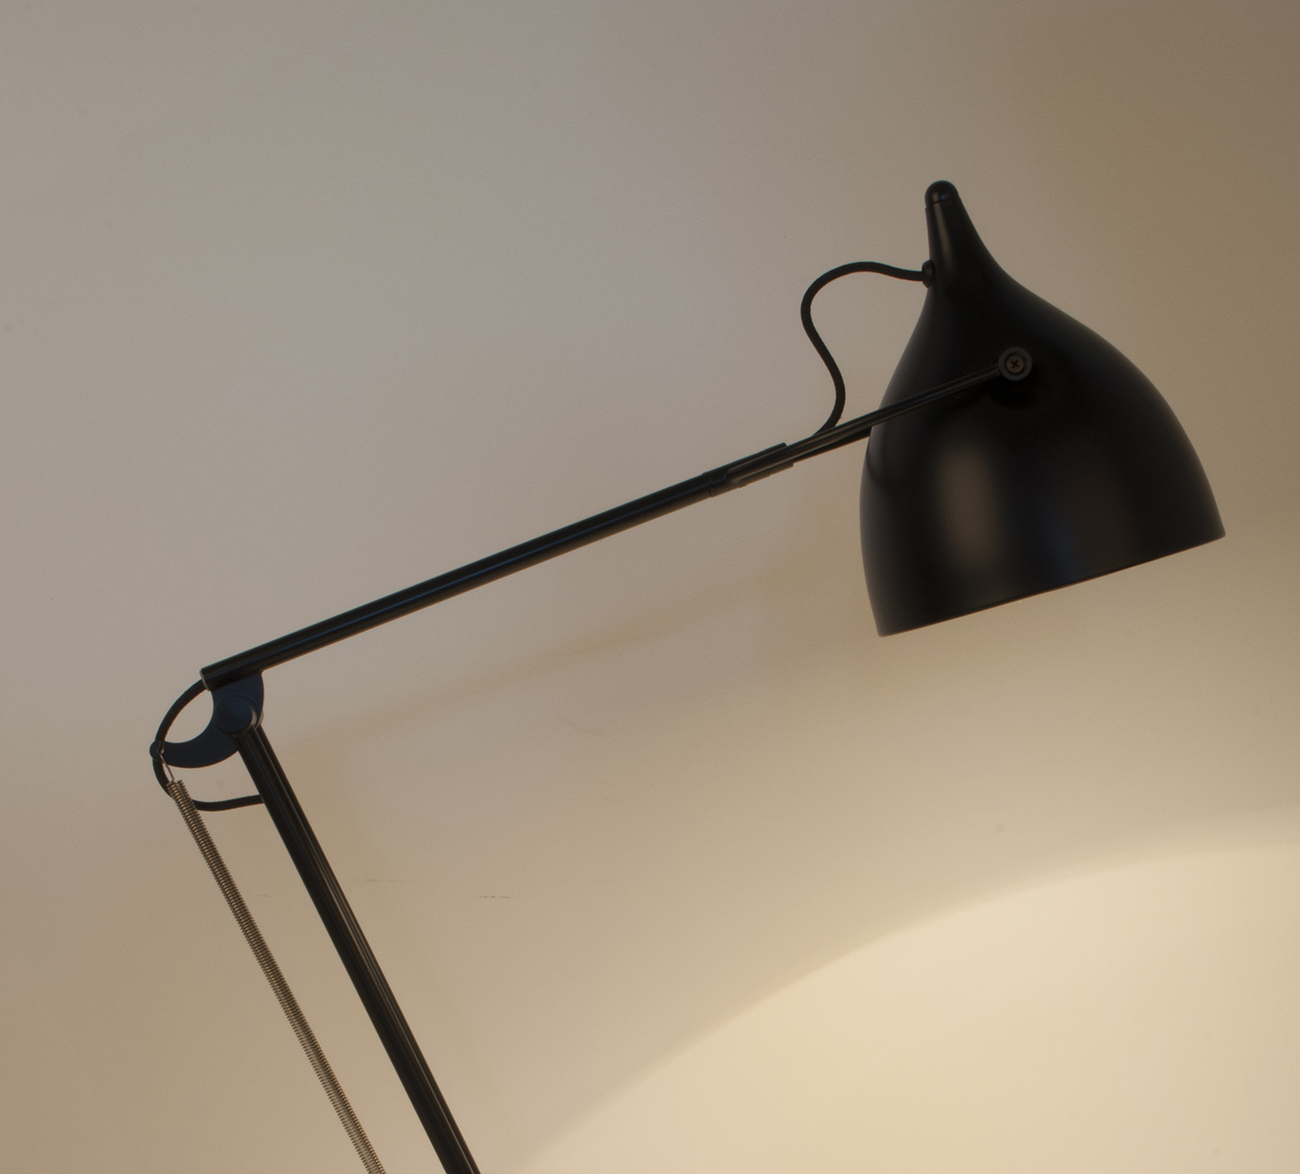 https://www.fundesign.nl/media/catalog/product/r/e/reader-desk-lamp-matt-black-on.jpg